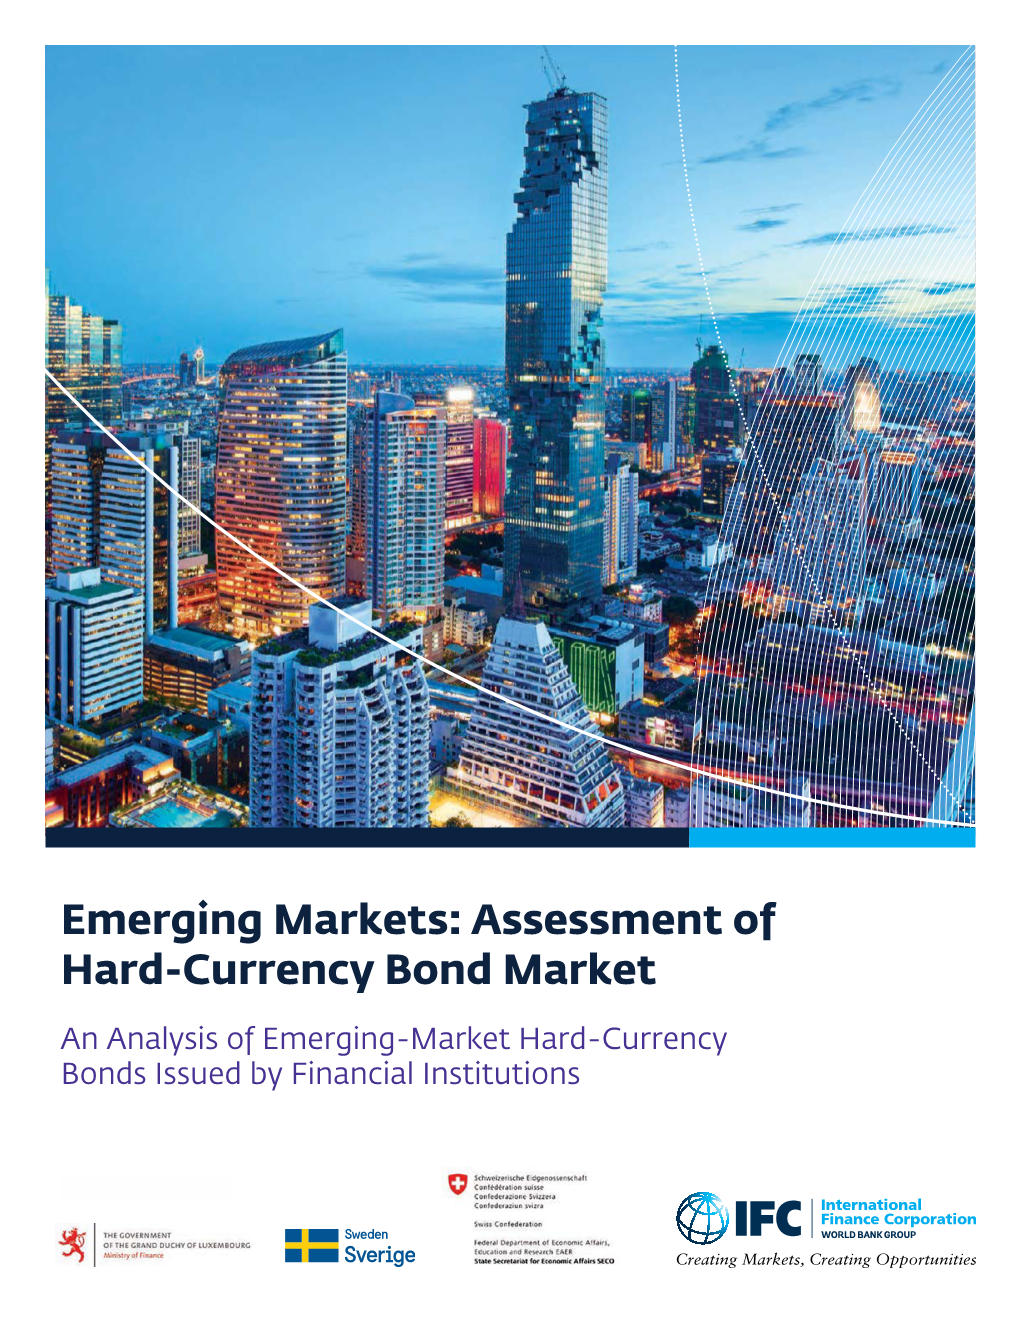 Assessment of Emerging Market Hard-Currency Bonds